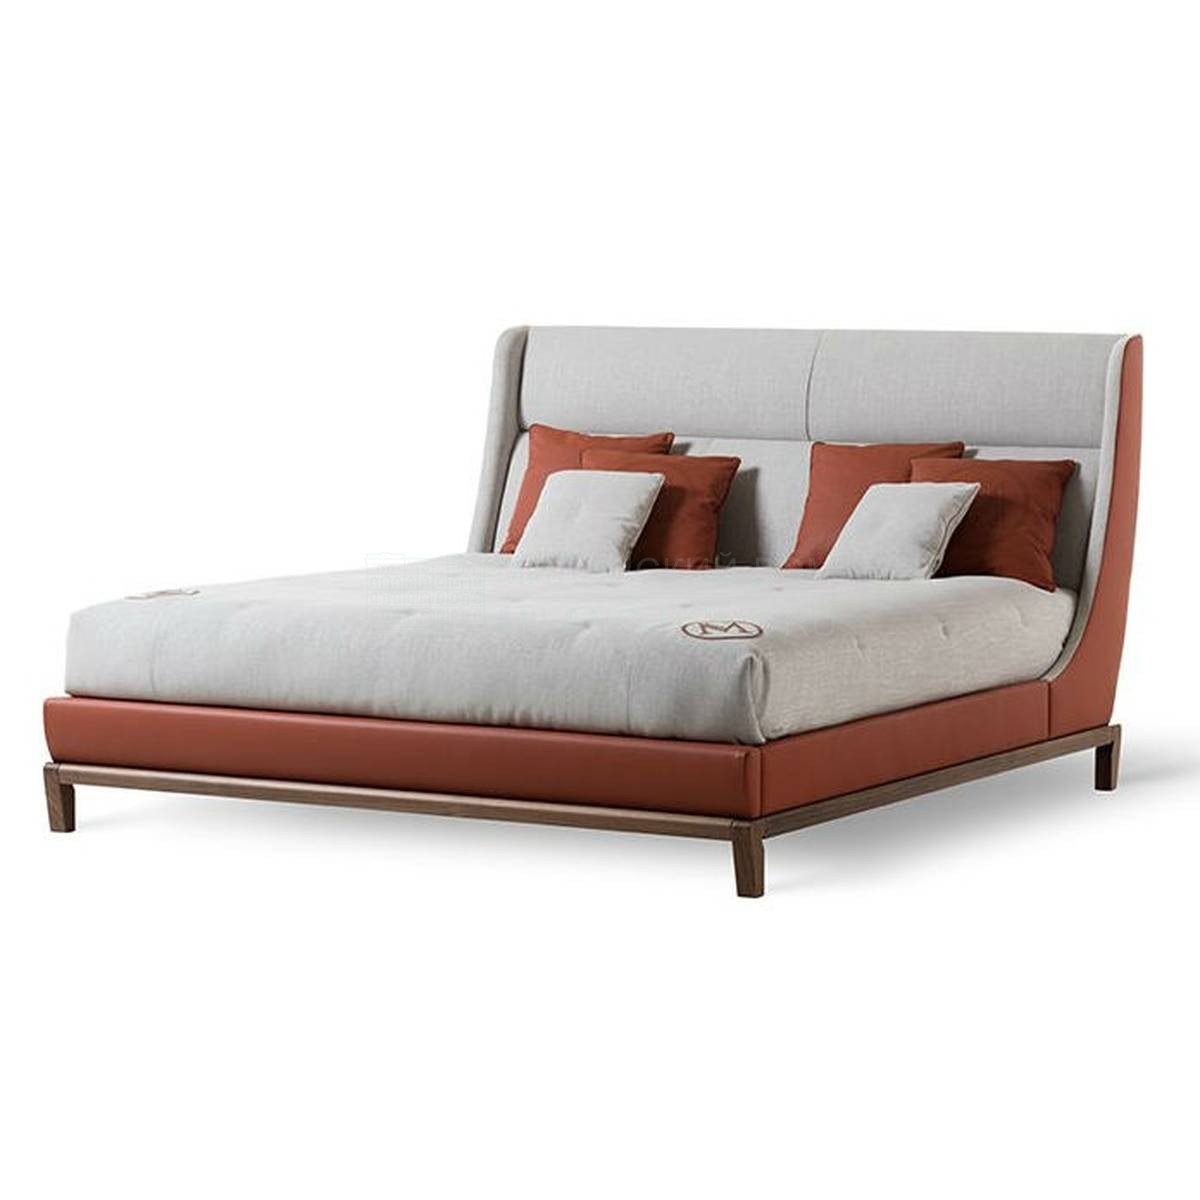 Кровать с мягким изголовьем Body bed из Италии фабрики MEDEA (Life style)